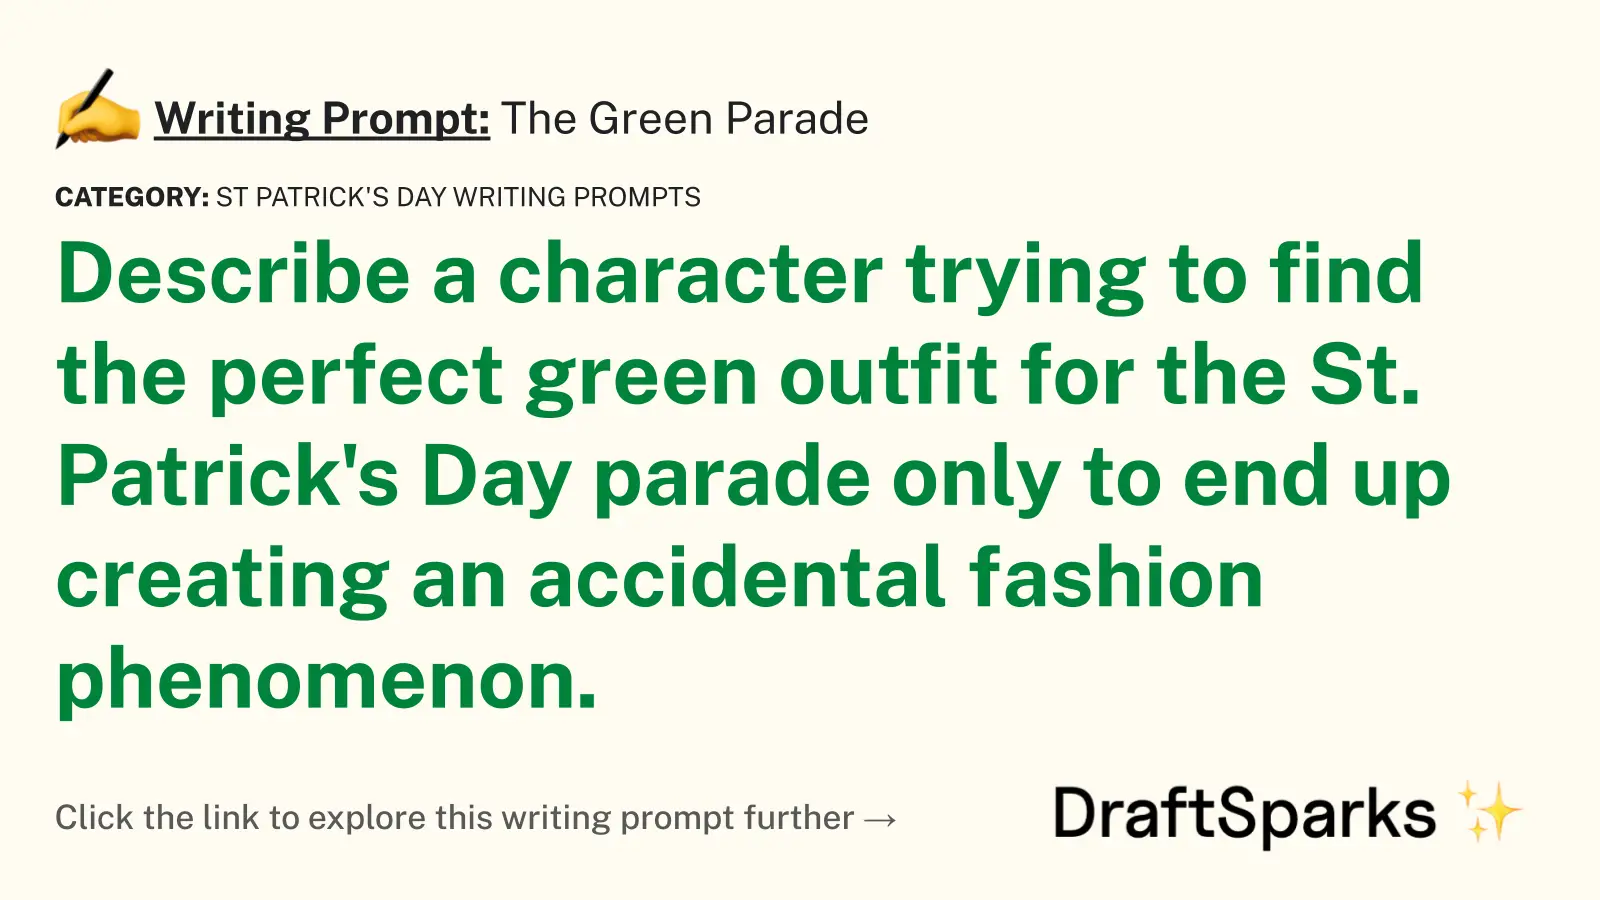 The Green Parade